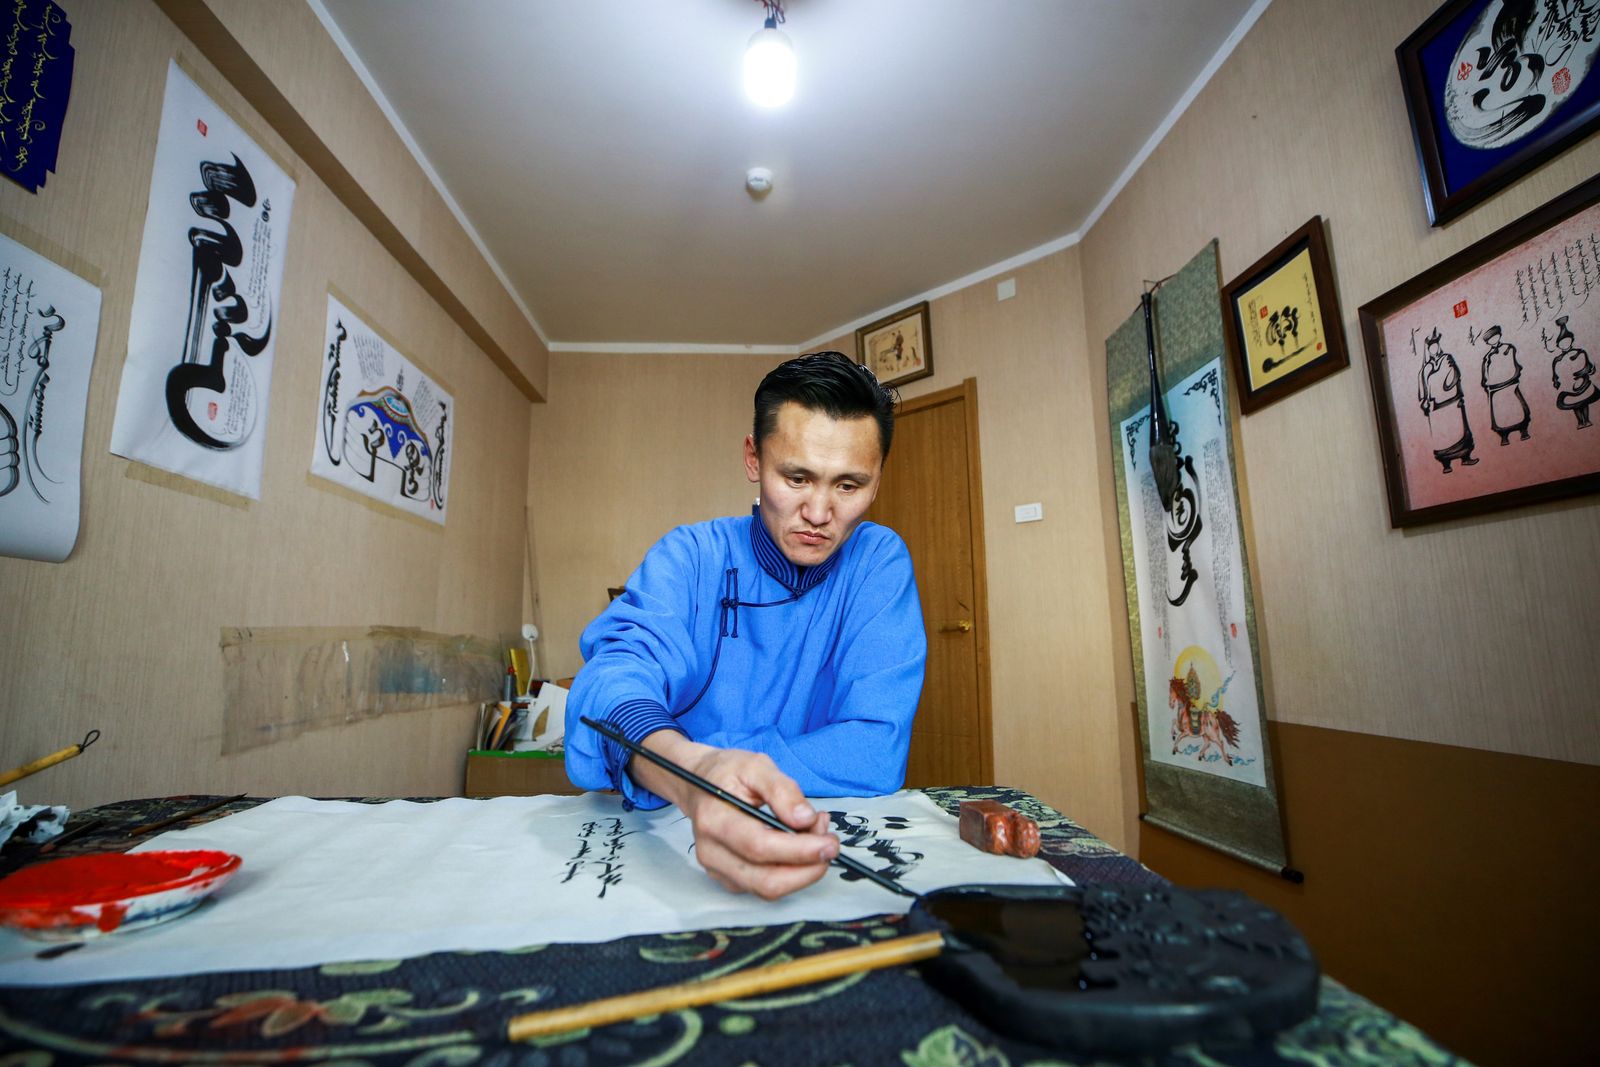 الخطاط جانزوريغ جولغو، الذي يكسب المال عن طريق بيع أعماله الفنية للخط بشكل أساسي، يكتب نصوصاً منغولية في منزله في أولان باتور، عاصمة منغوليا - AFP